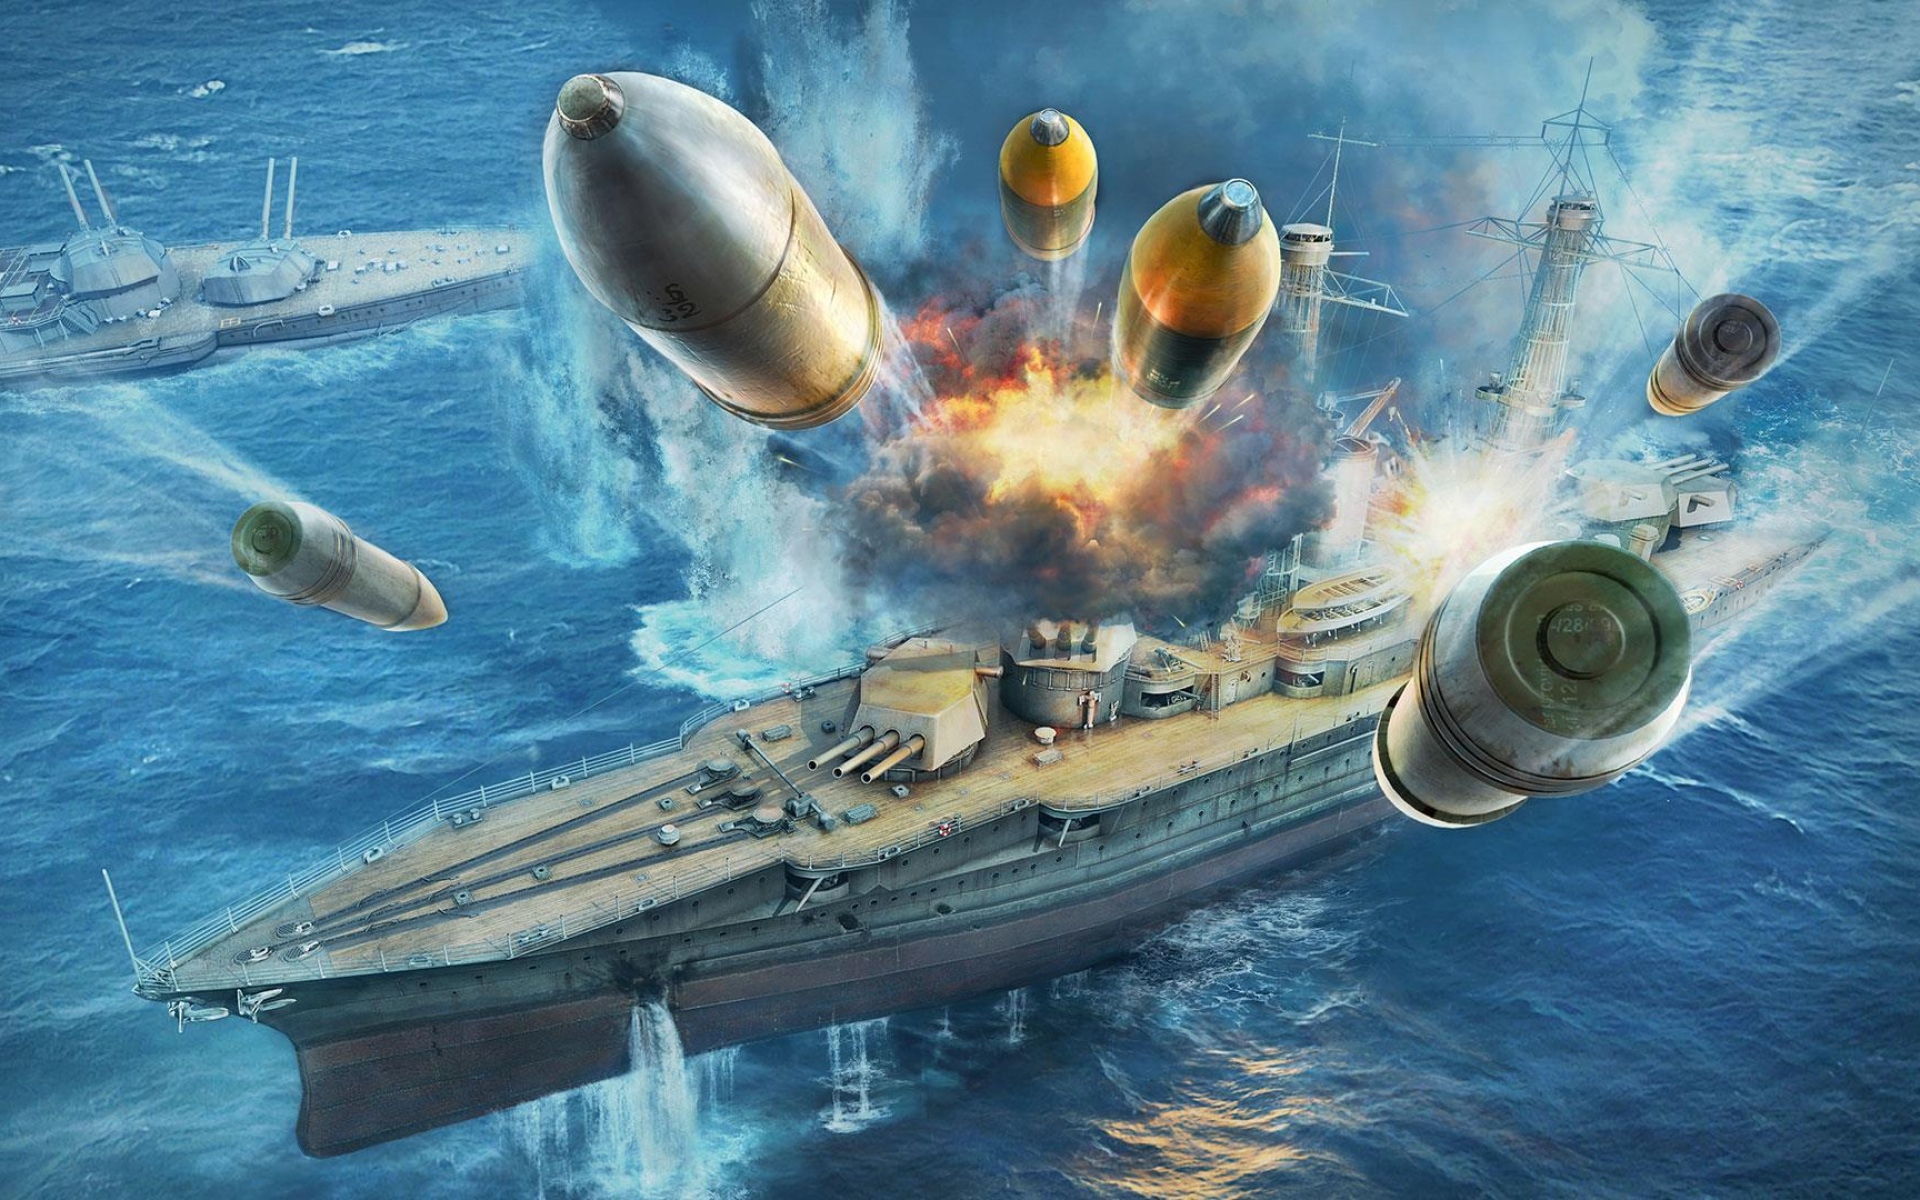 Картинки Мир военных кораблей, wargaming net, корабли, взрыв фото и обои на рабочий стол